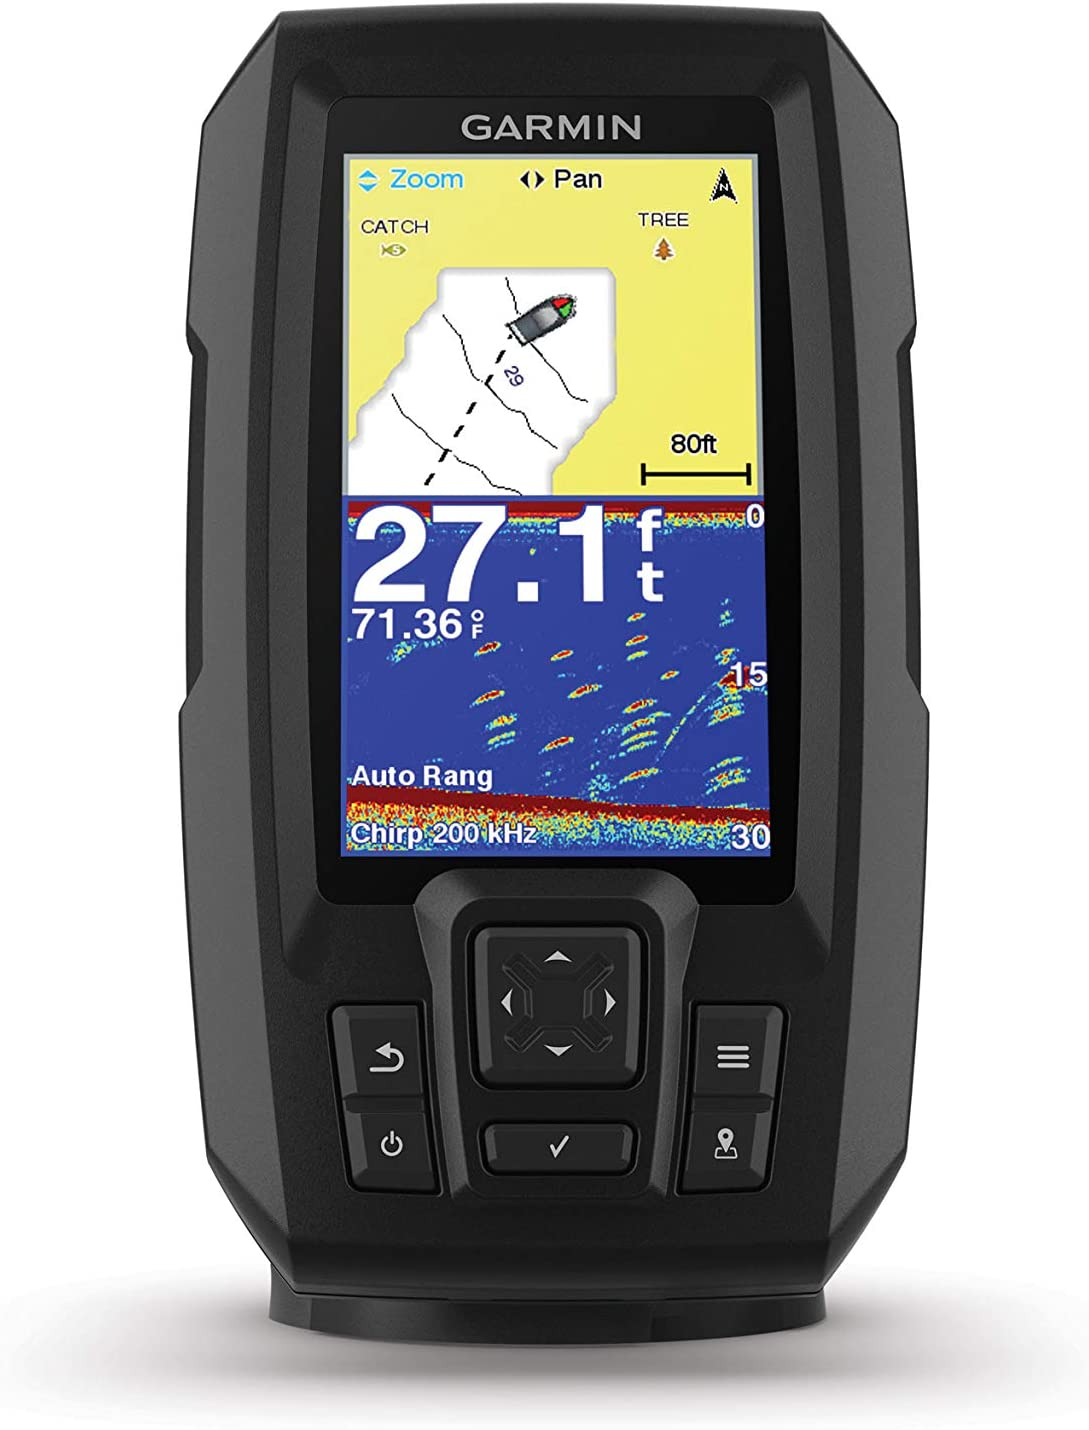 SONAR CON GPS GARMIN STRIKER 4 (010-01870-00) - 4